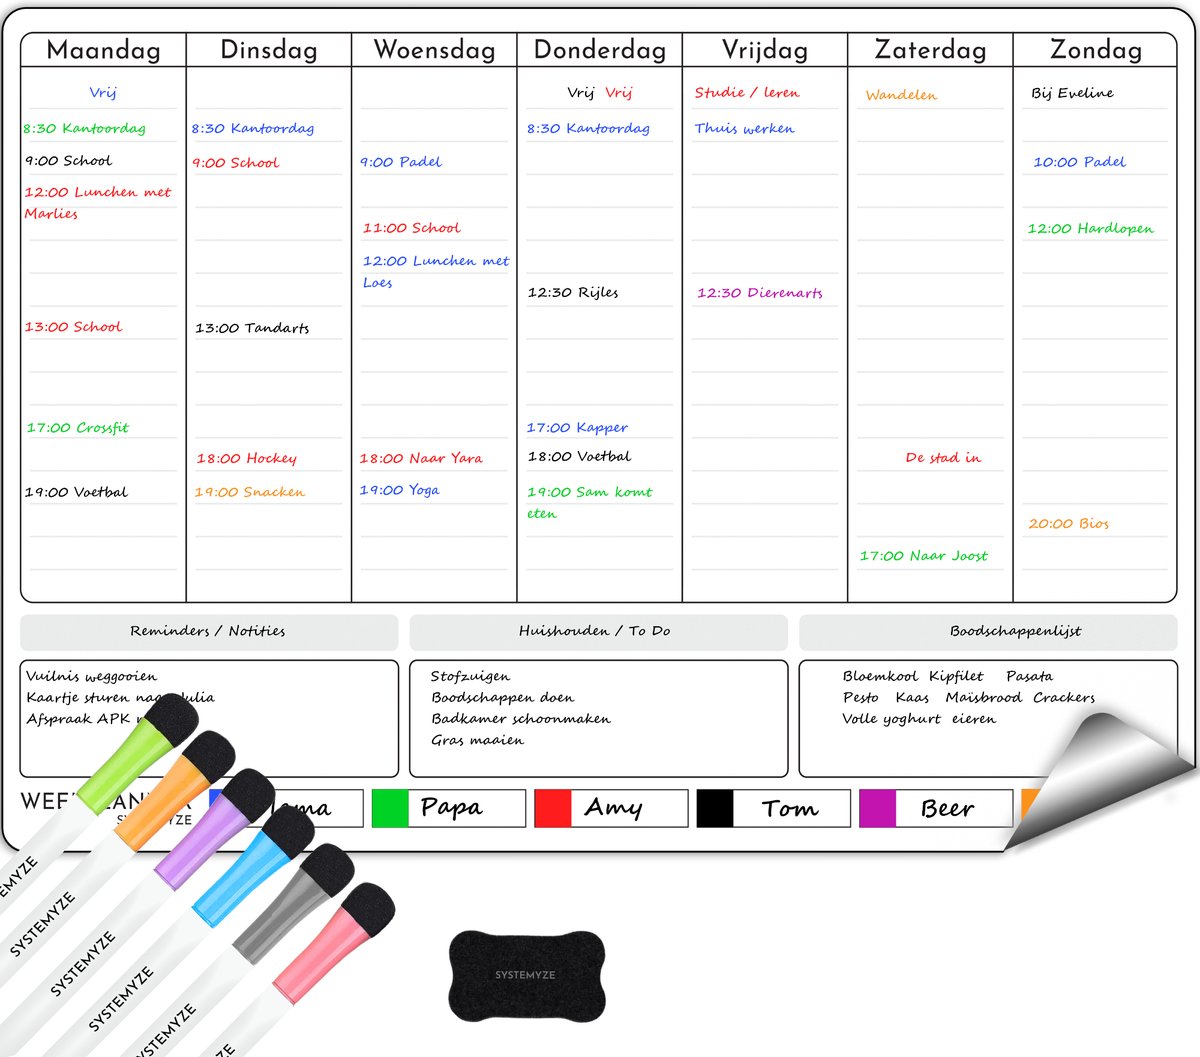 Systemyze Weekplanner Whiteboard – Magnetisch Planbord – Magnetische Maandplanner – Inclusief Markers & Wisser – A3 Formaat - Systemyze